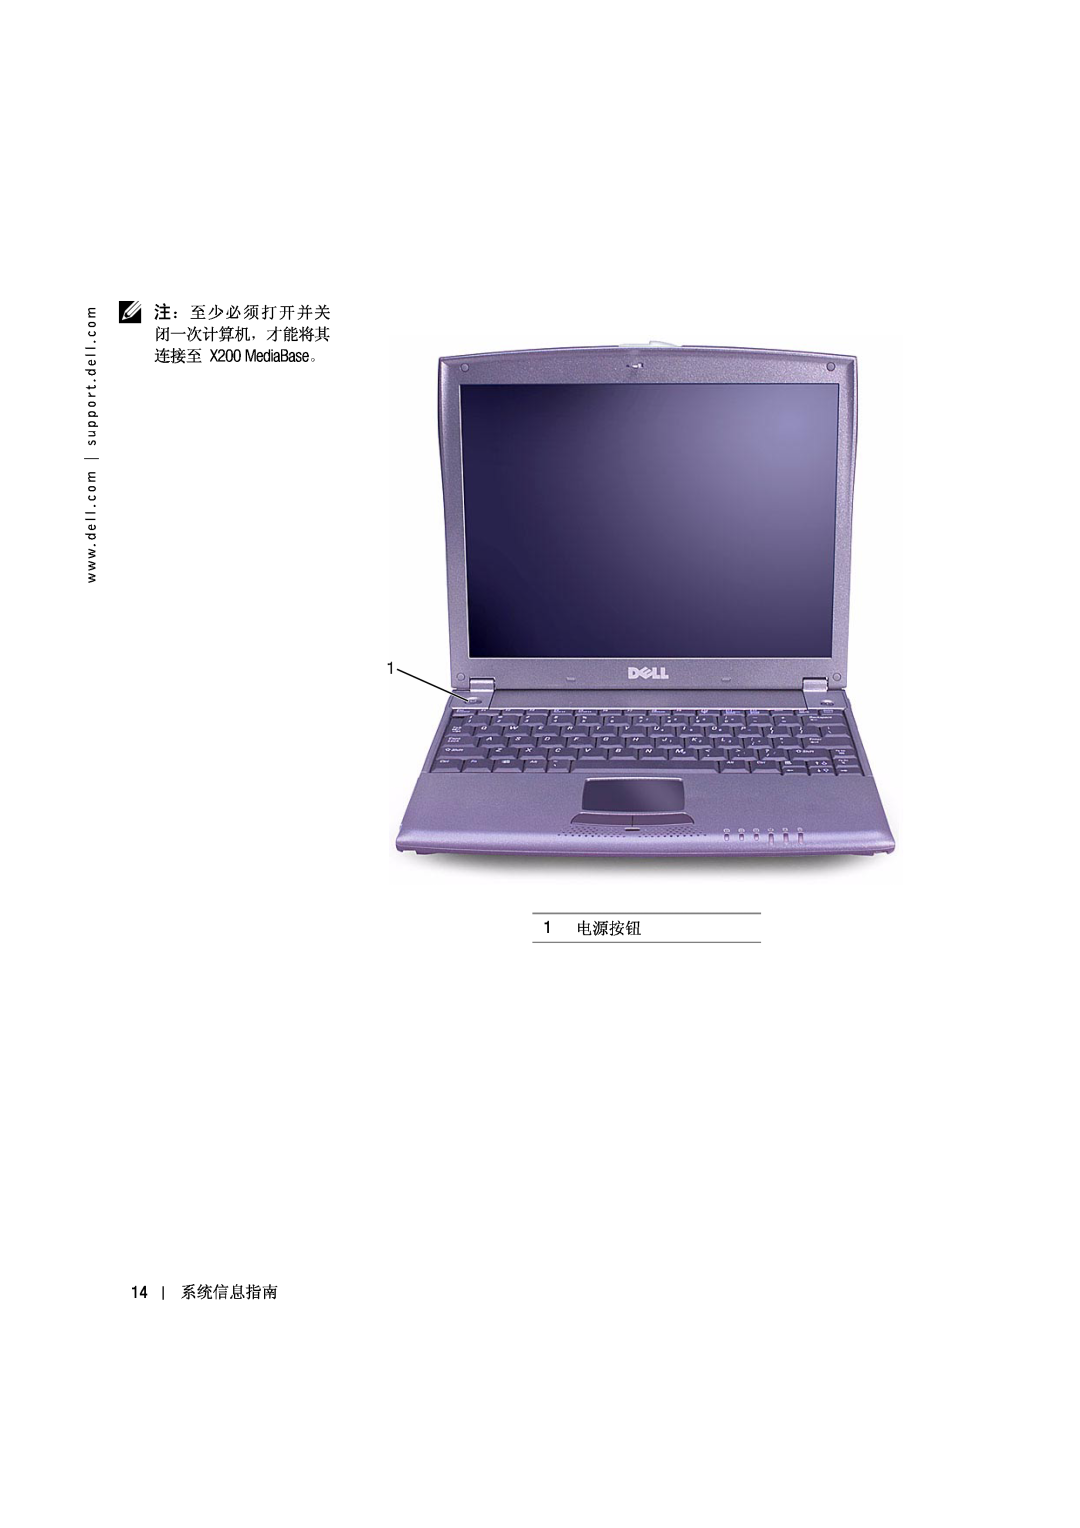 Dell PP03S manual Žd X200 MediaBase, dÝr$ƒ „1ó, 1 34Ÿ 